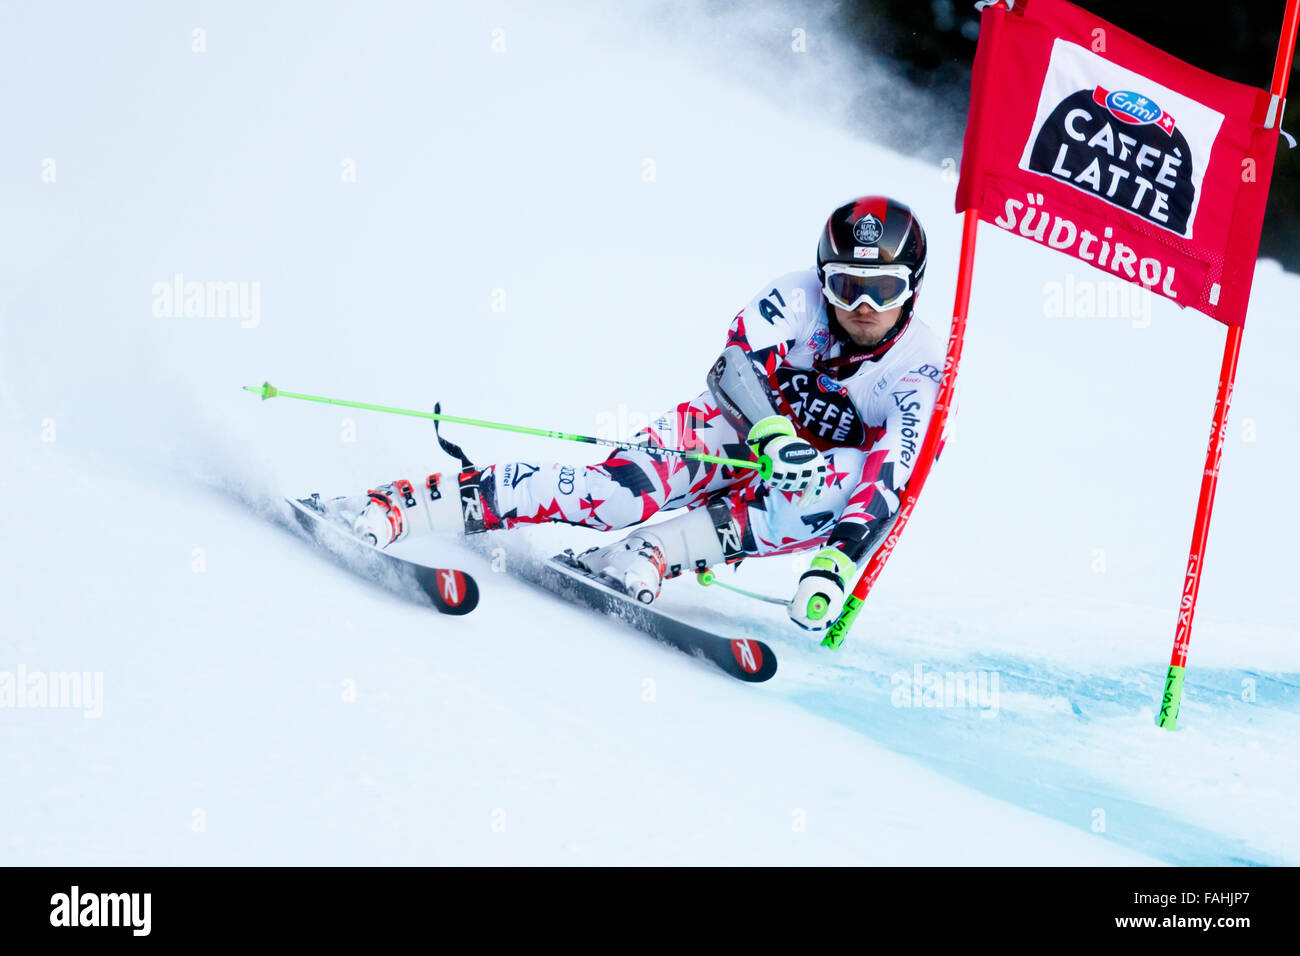 Alta Badia, Italia el 20 de diciembre de 2015. Christian HIRSCHBUEHL (Aut) compitiendo en el Audi Fis de la Copa del Mundo de Esquí Alpino Slalom Gigante de hombres en la Gran Risa curso en la cordillera de dolomita. Foto de stock